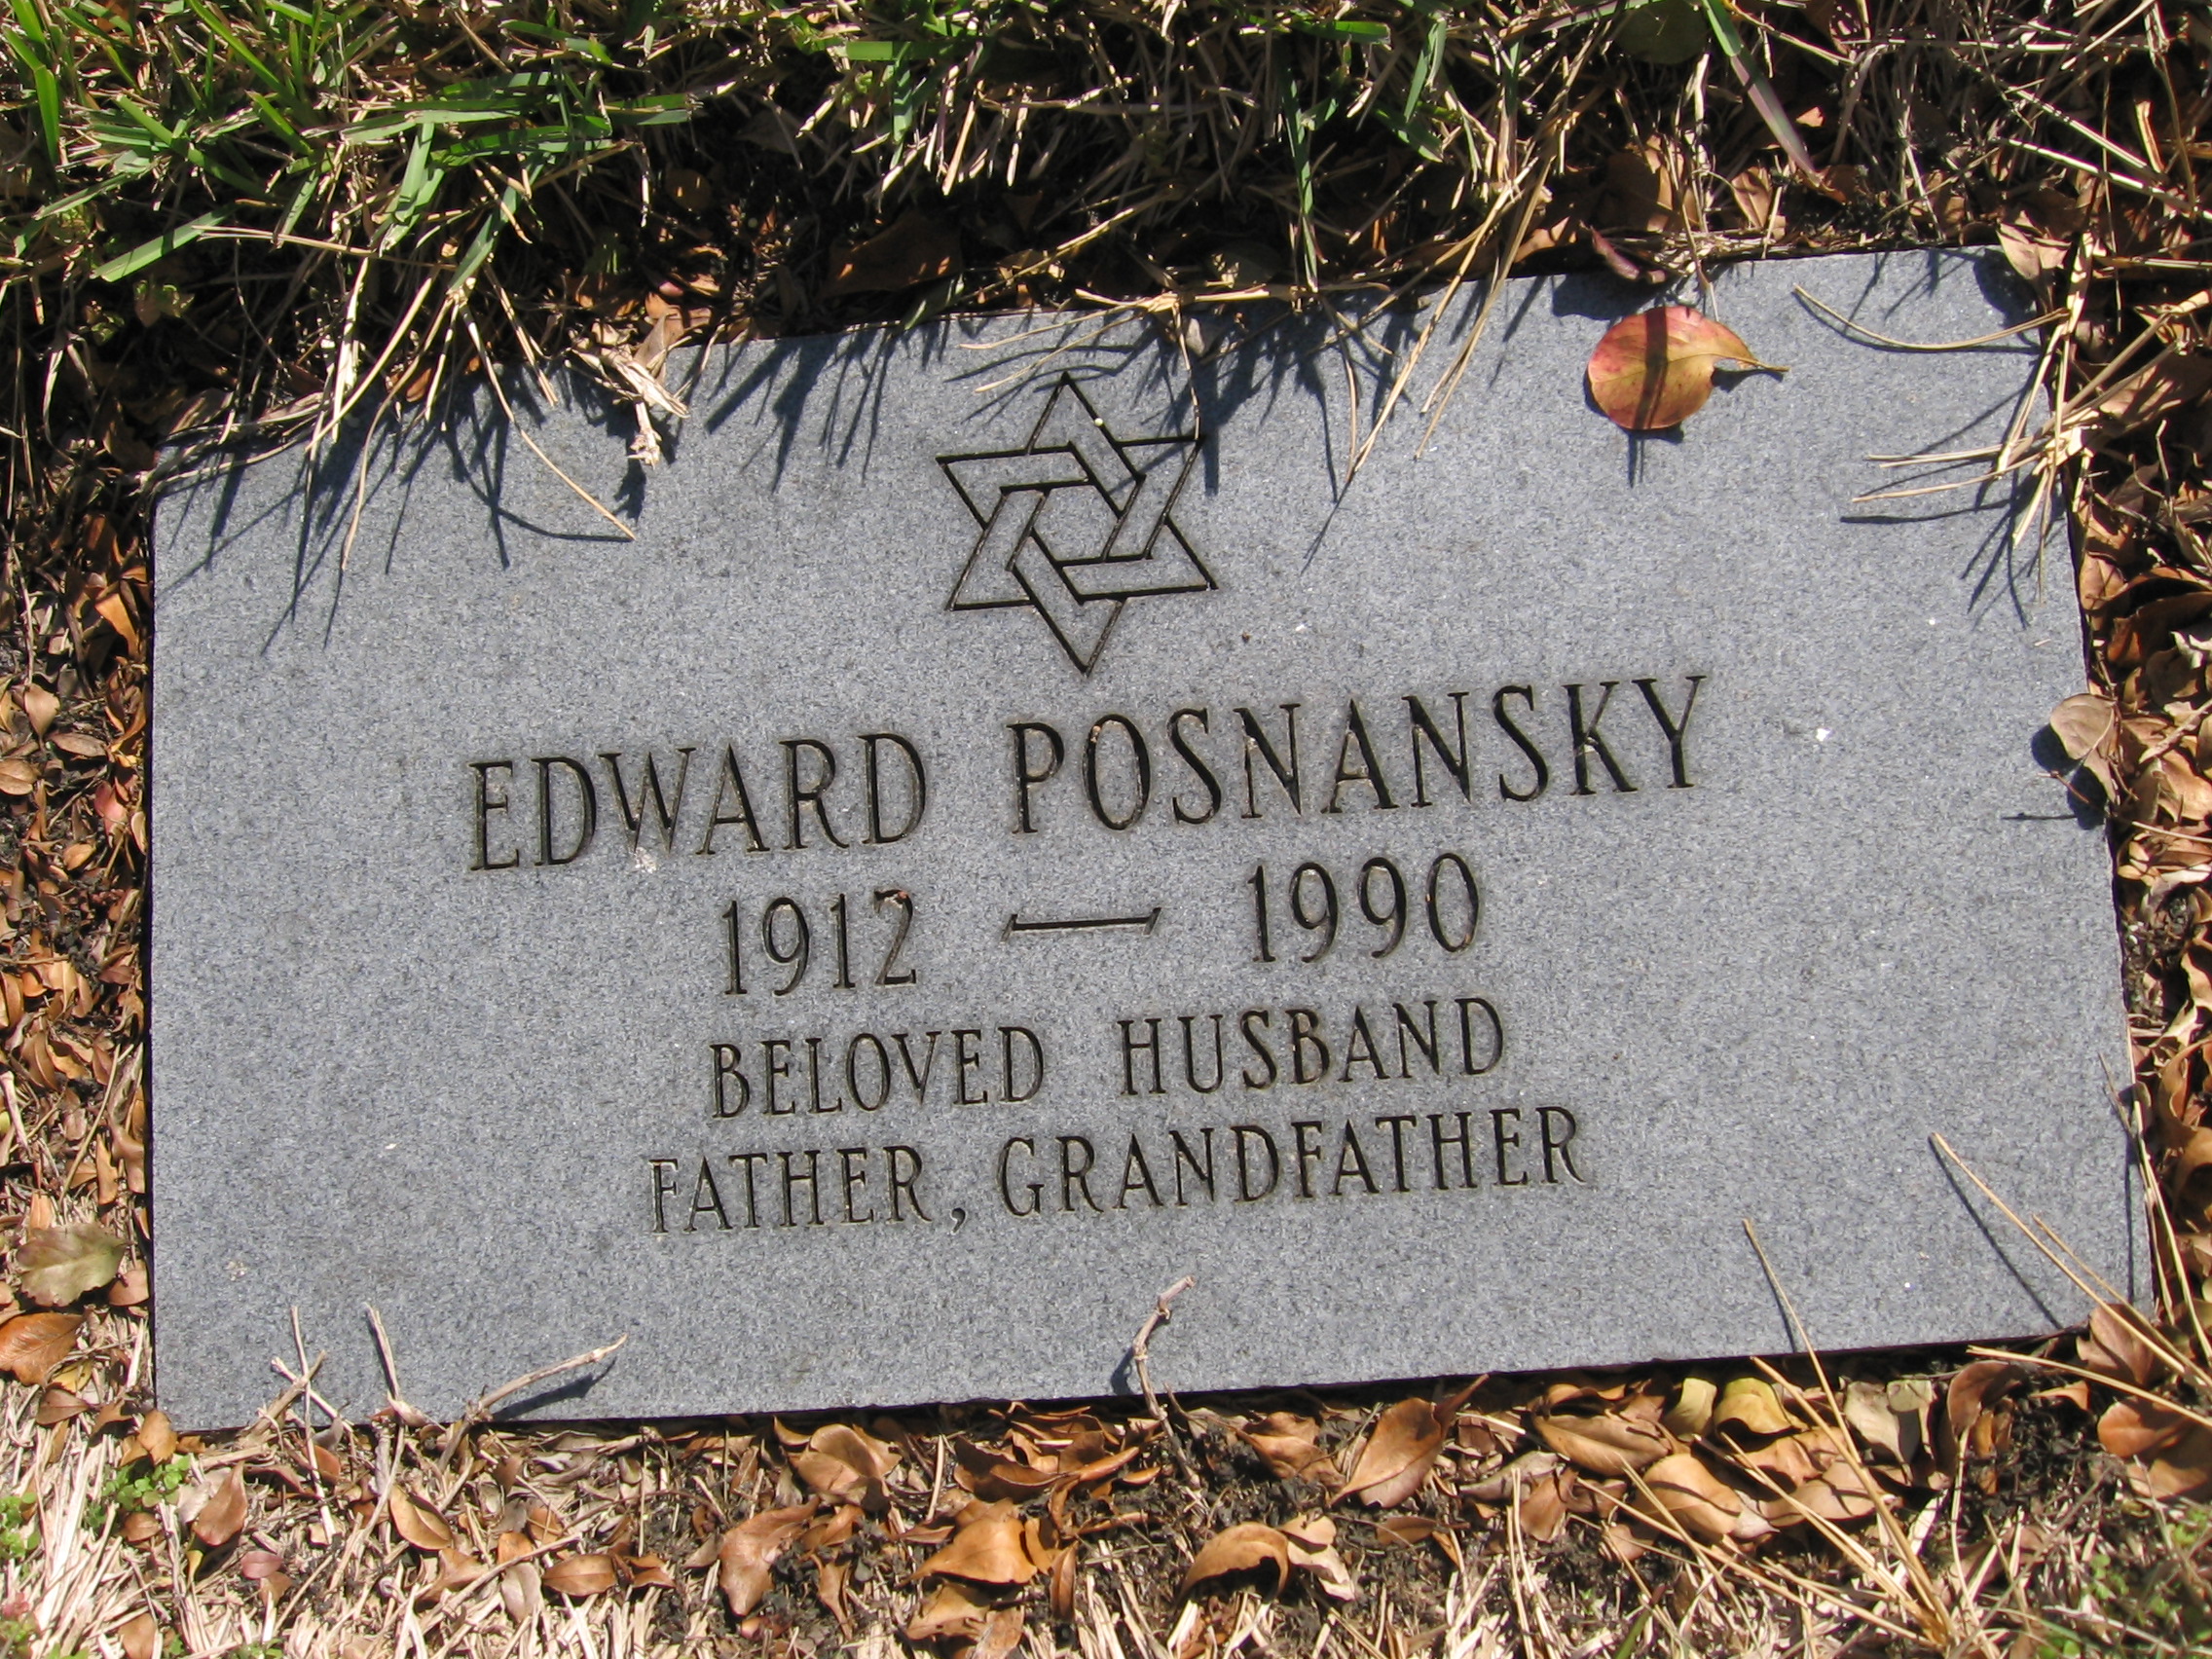 Edward Posnansky